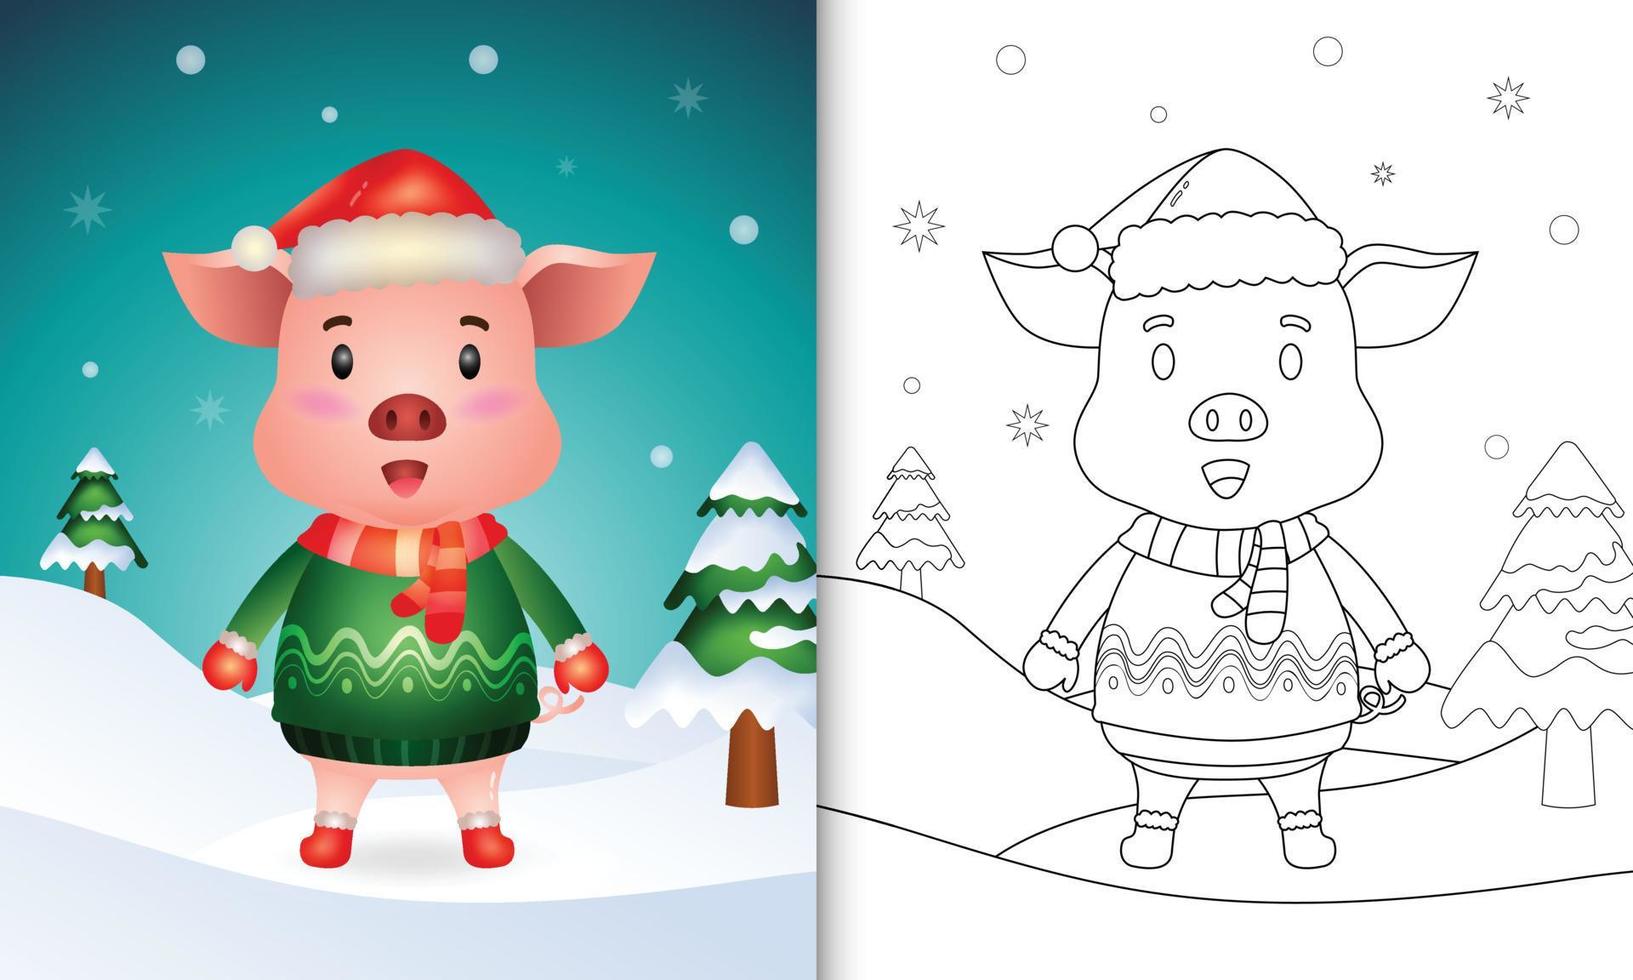 kleurboek met een schattig varken kerstfiguren met een kerstmuts, jas en sjaal vector